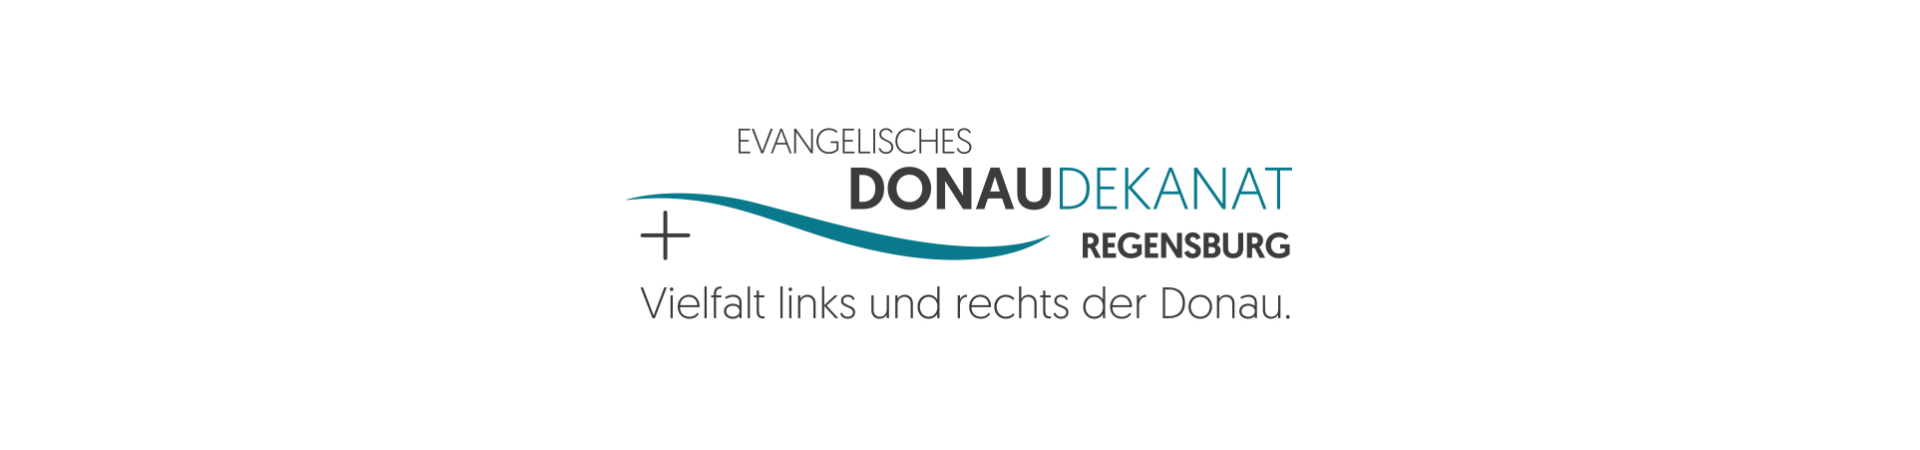 Evangelisch-Lutherisches Dekanat Regensburg 